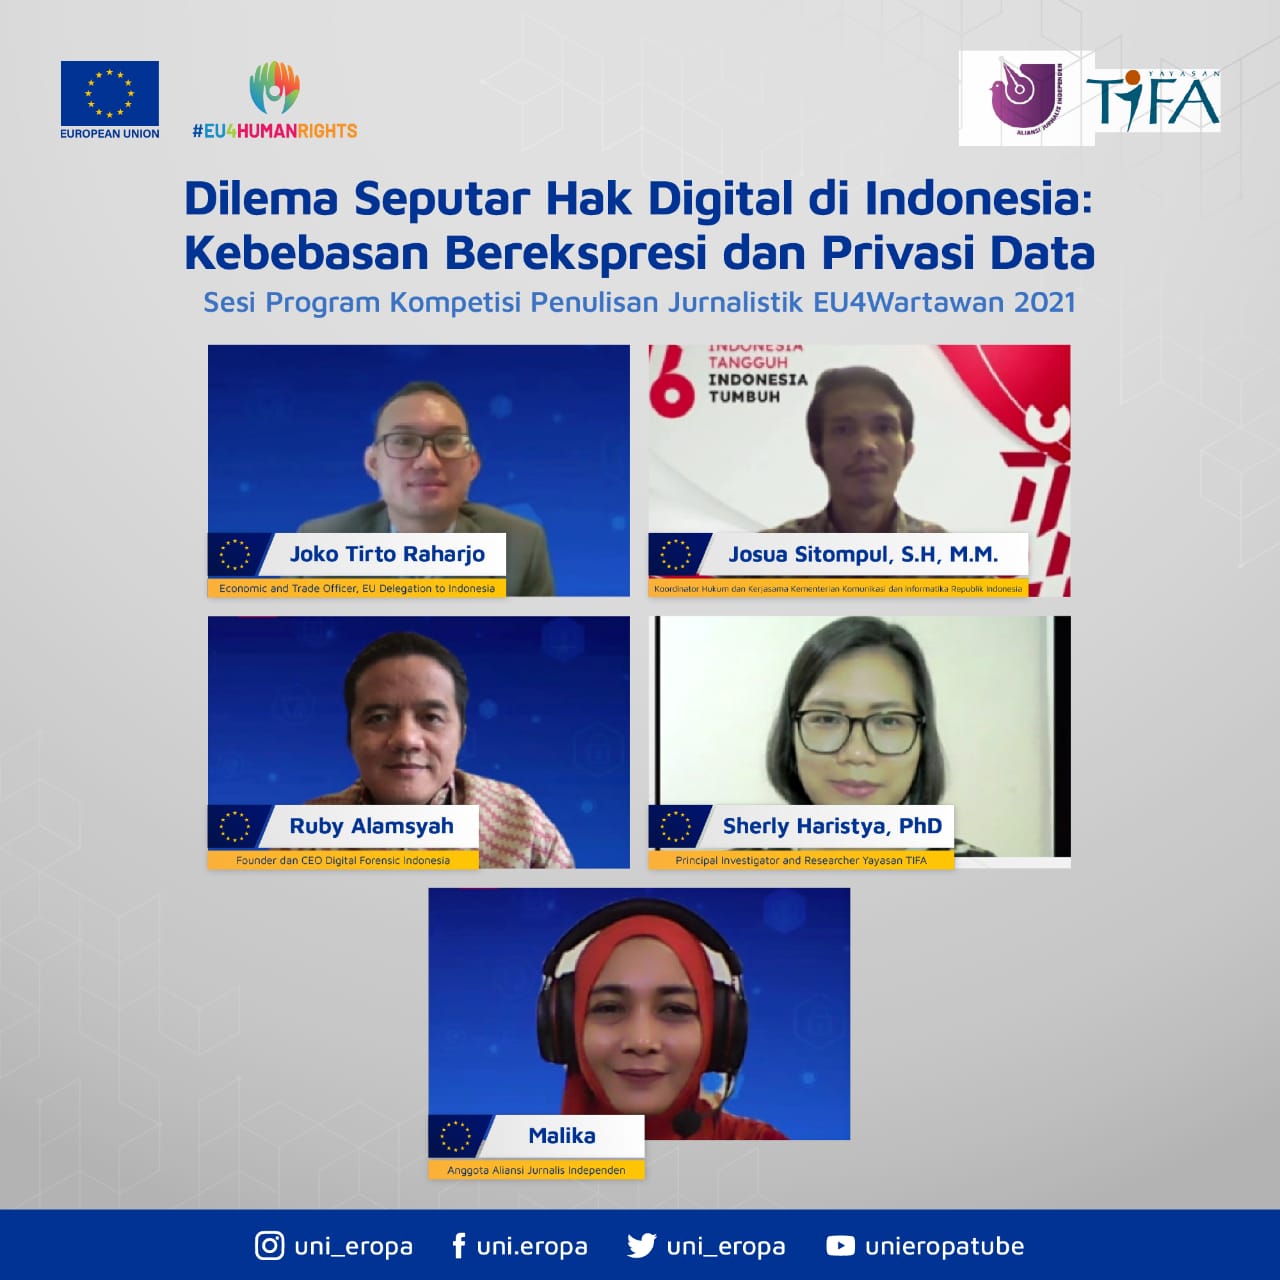 Dilema Seputar Hak Digital di Indonesia, Kebebasan Berekspresi dan Privasi Data